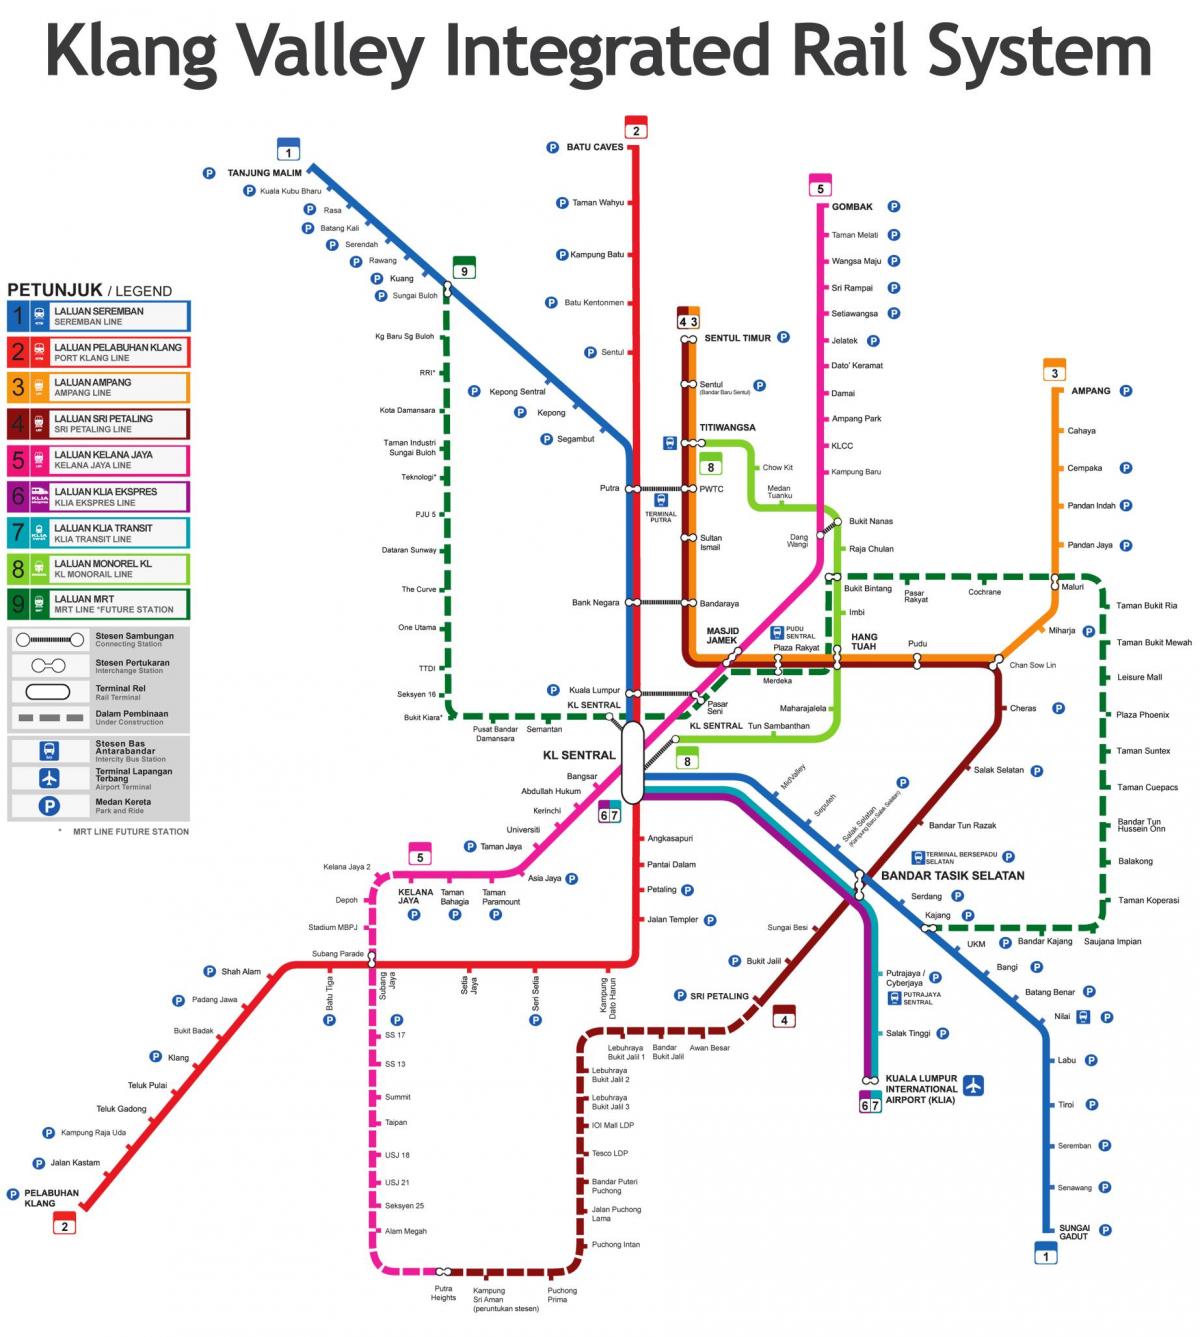 نقشه قطار مالزی